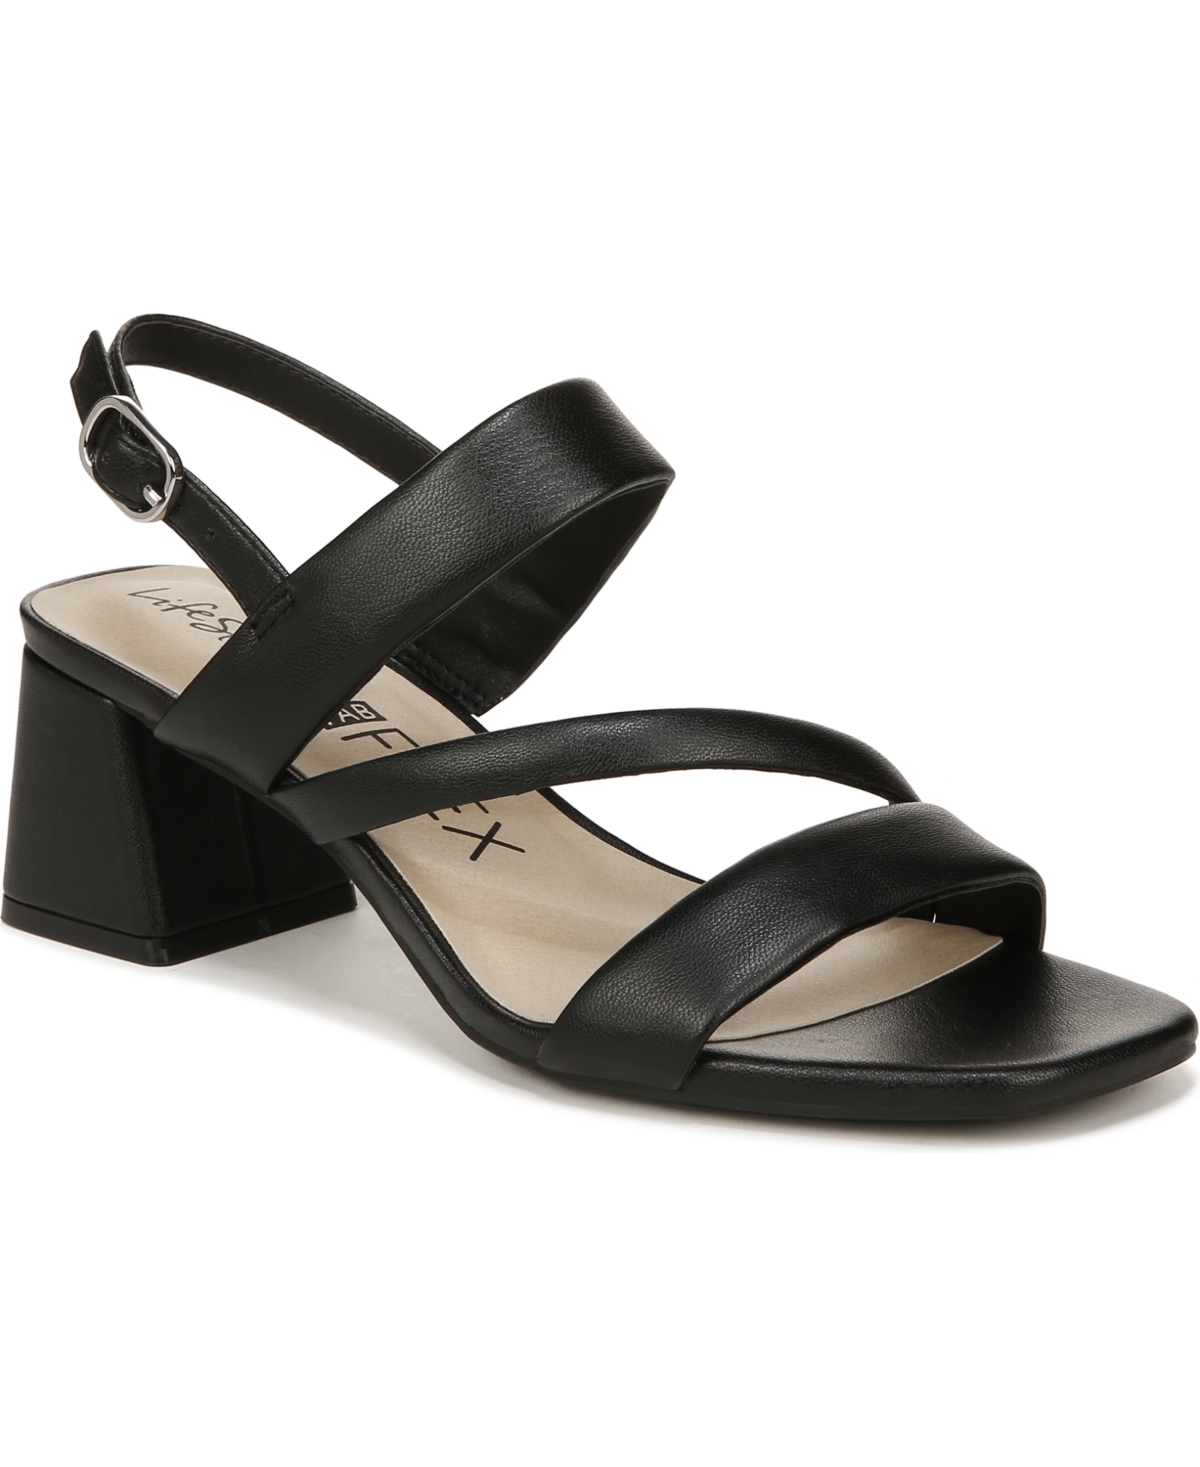 Women's Celia Asymmetrical Block Heel Dress Sandals - Black Faux Leather